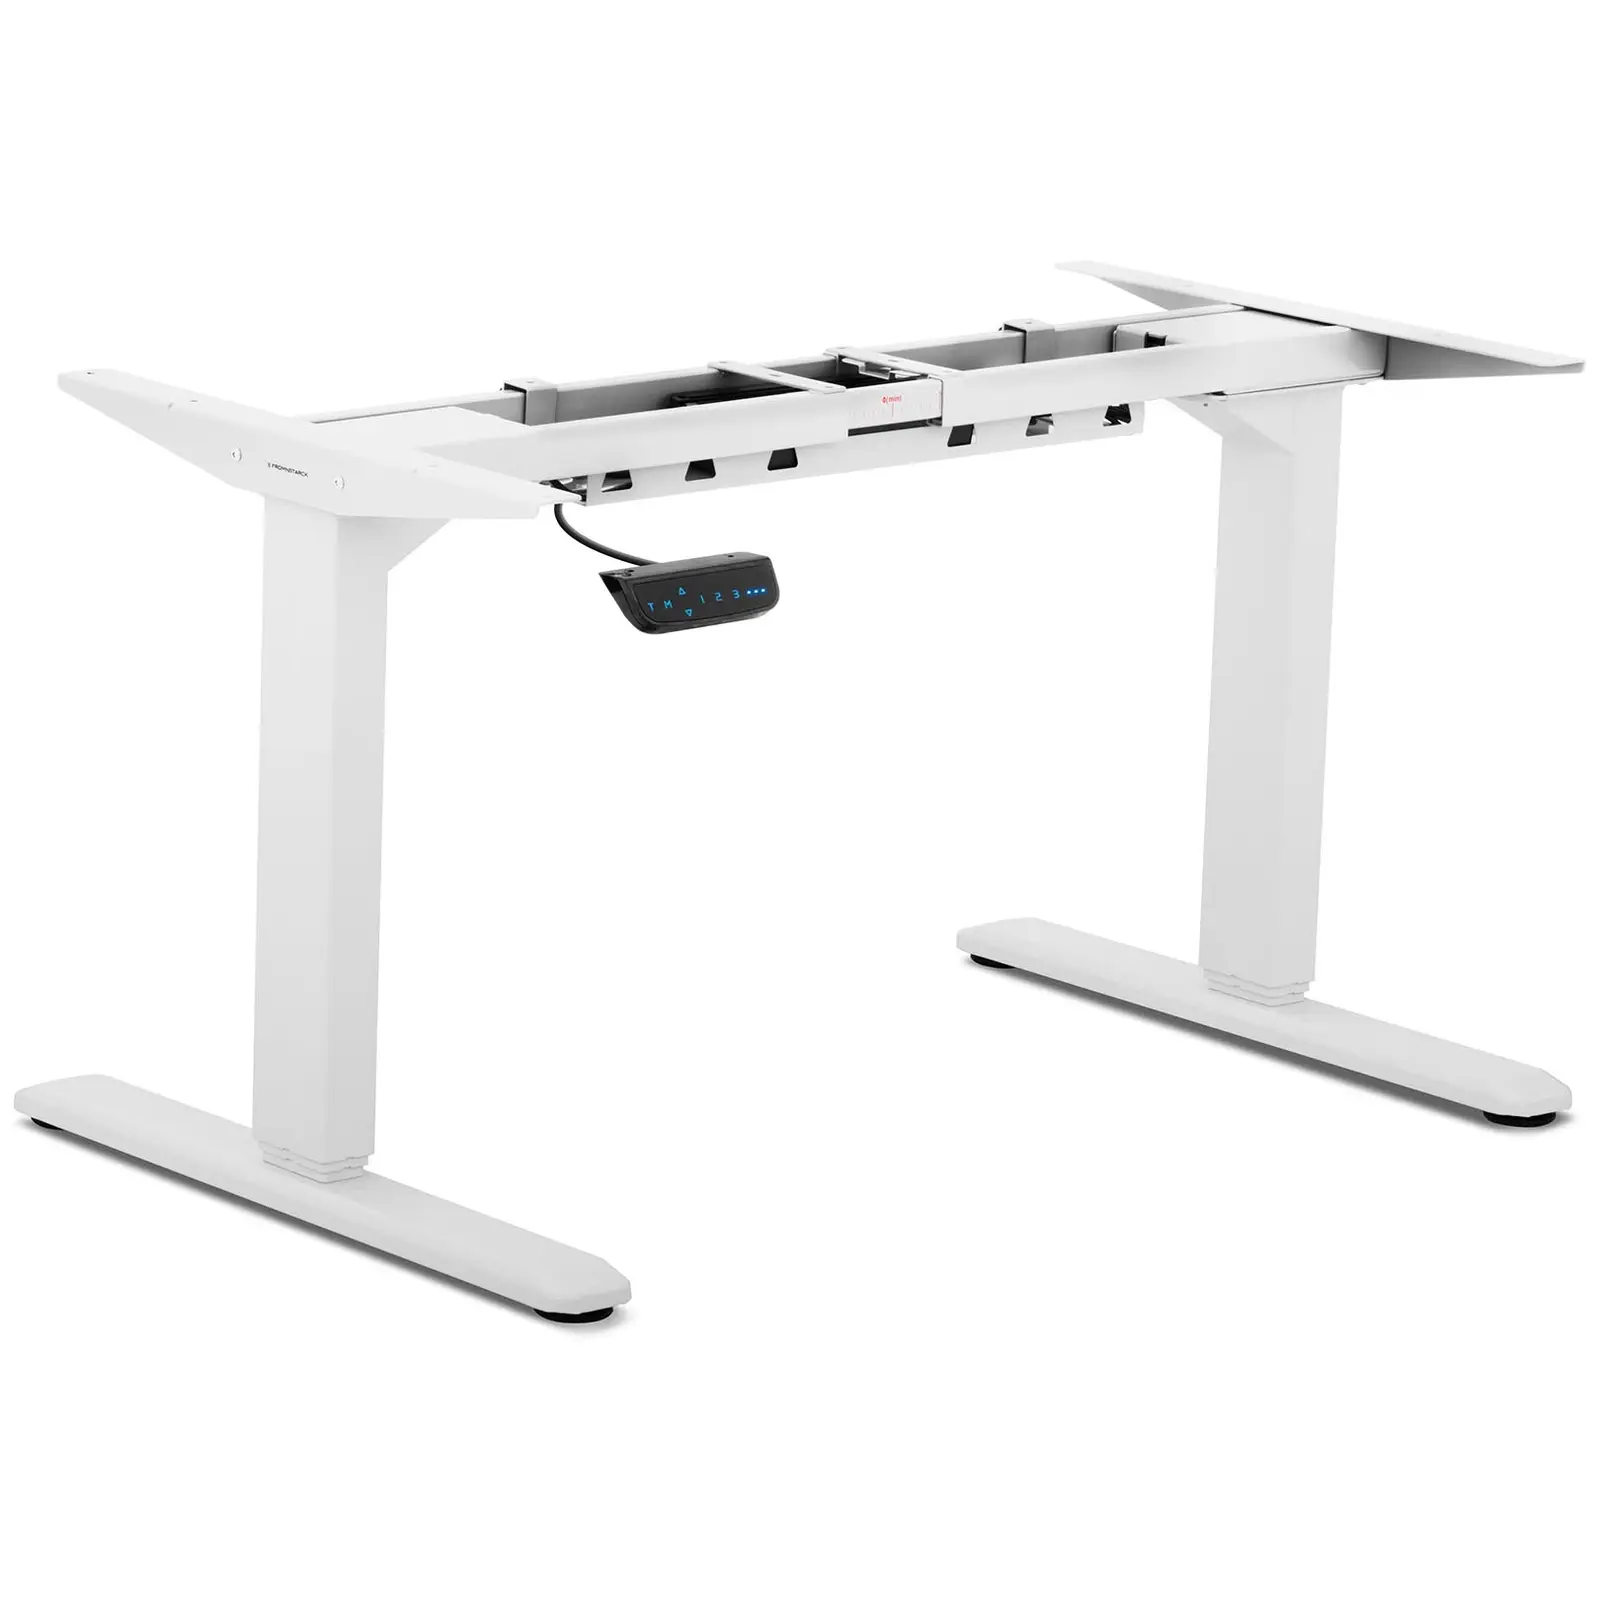 Supporto scrivania regolabile in altezza - 200 W - 100 kg - bianco